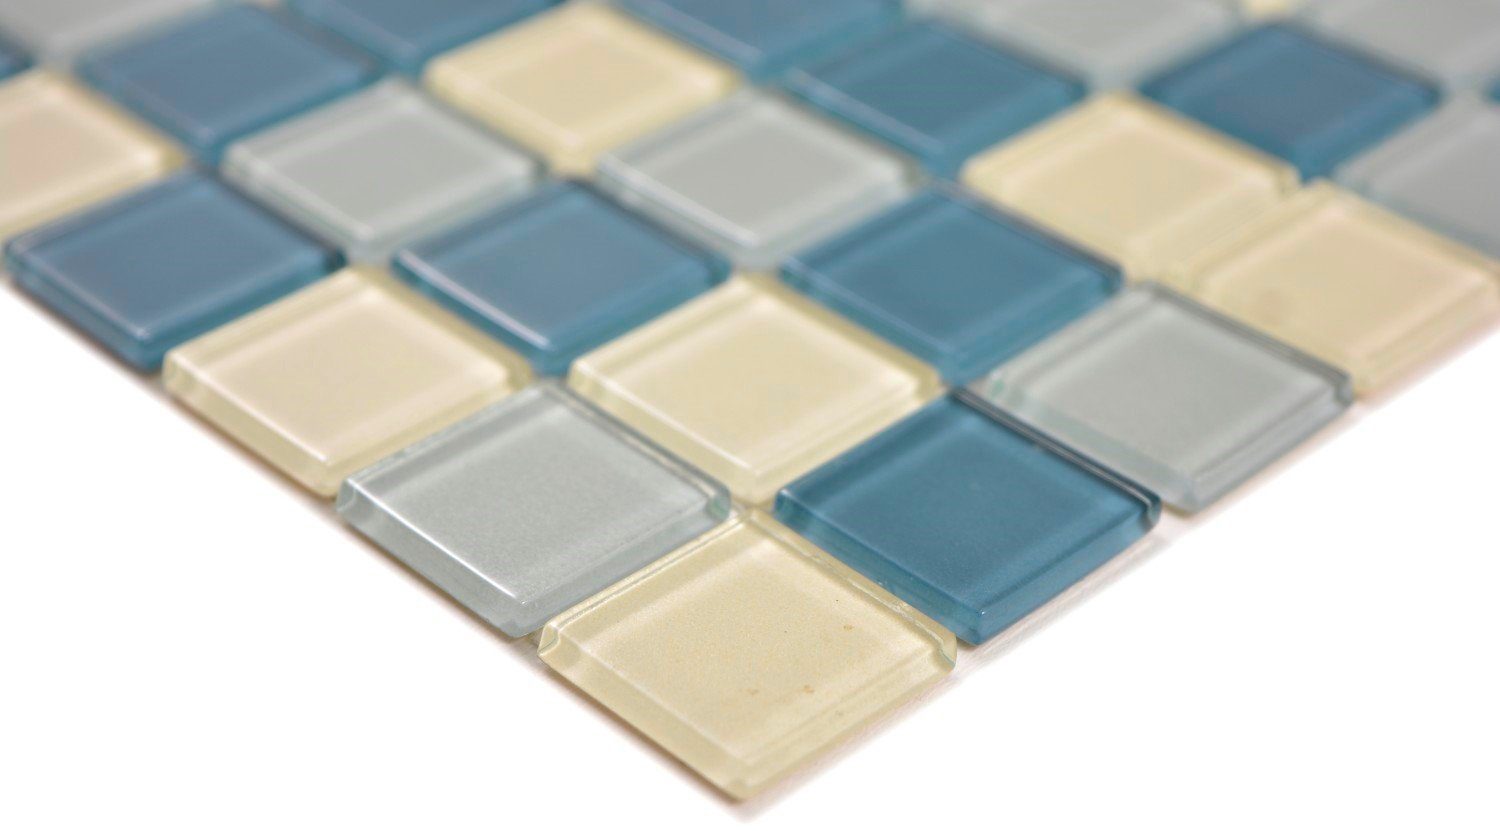 Mosani Mosaikfliesen Quadratisches Glasmosaik Crystal mix silber weiß glänzend